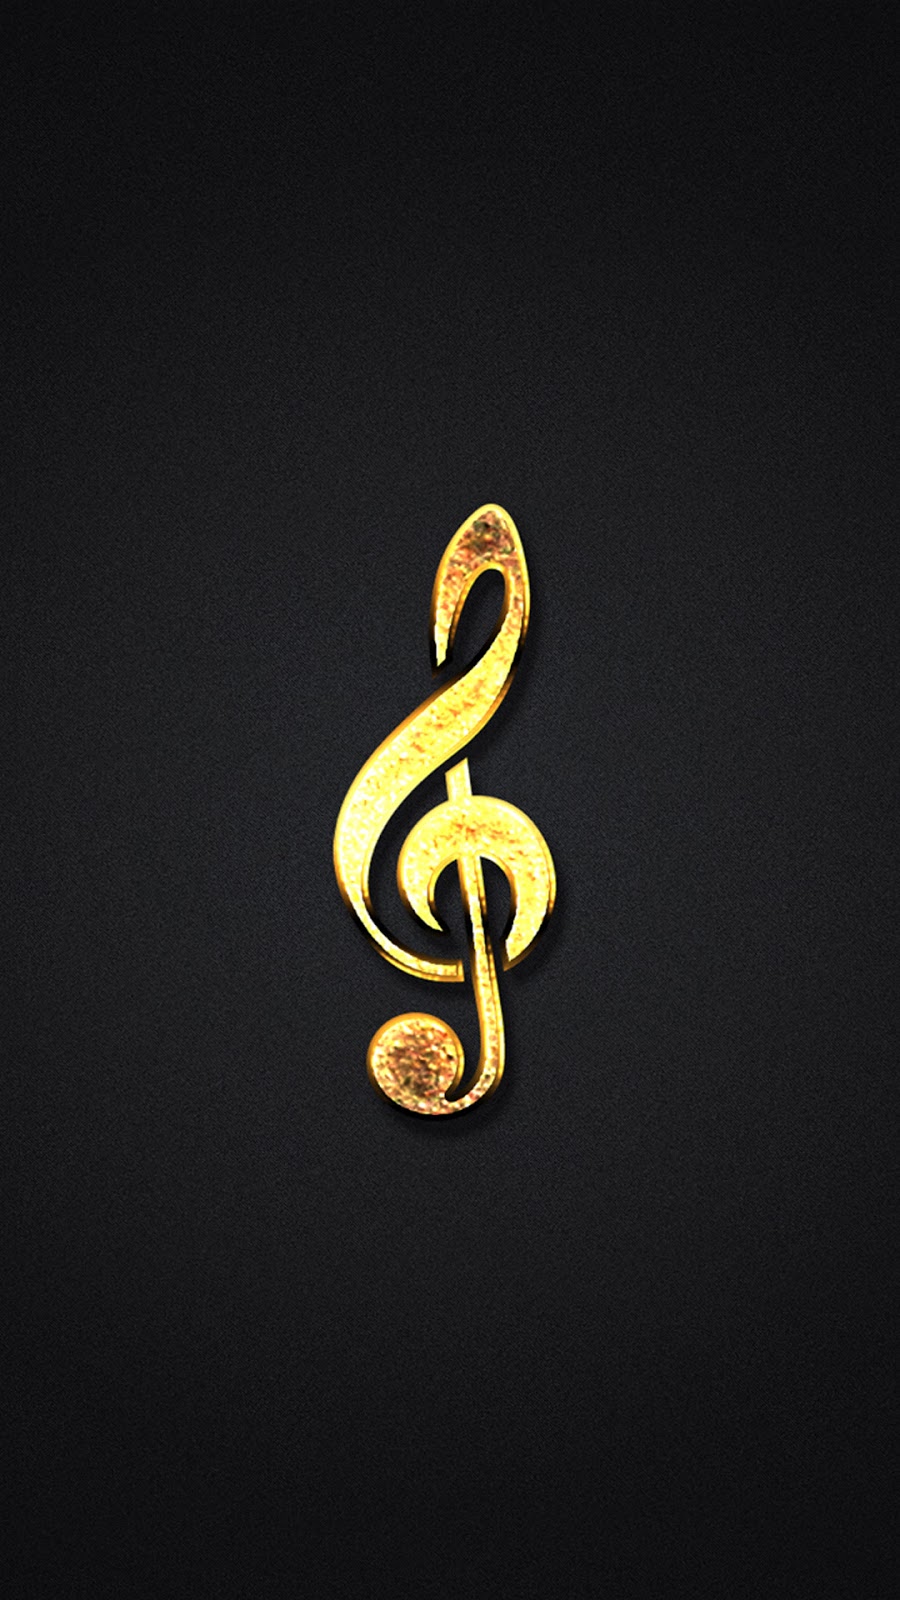 musica sfondi per iphone,giallo,font,serpente,metallo,simbolo